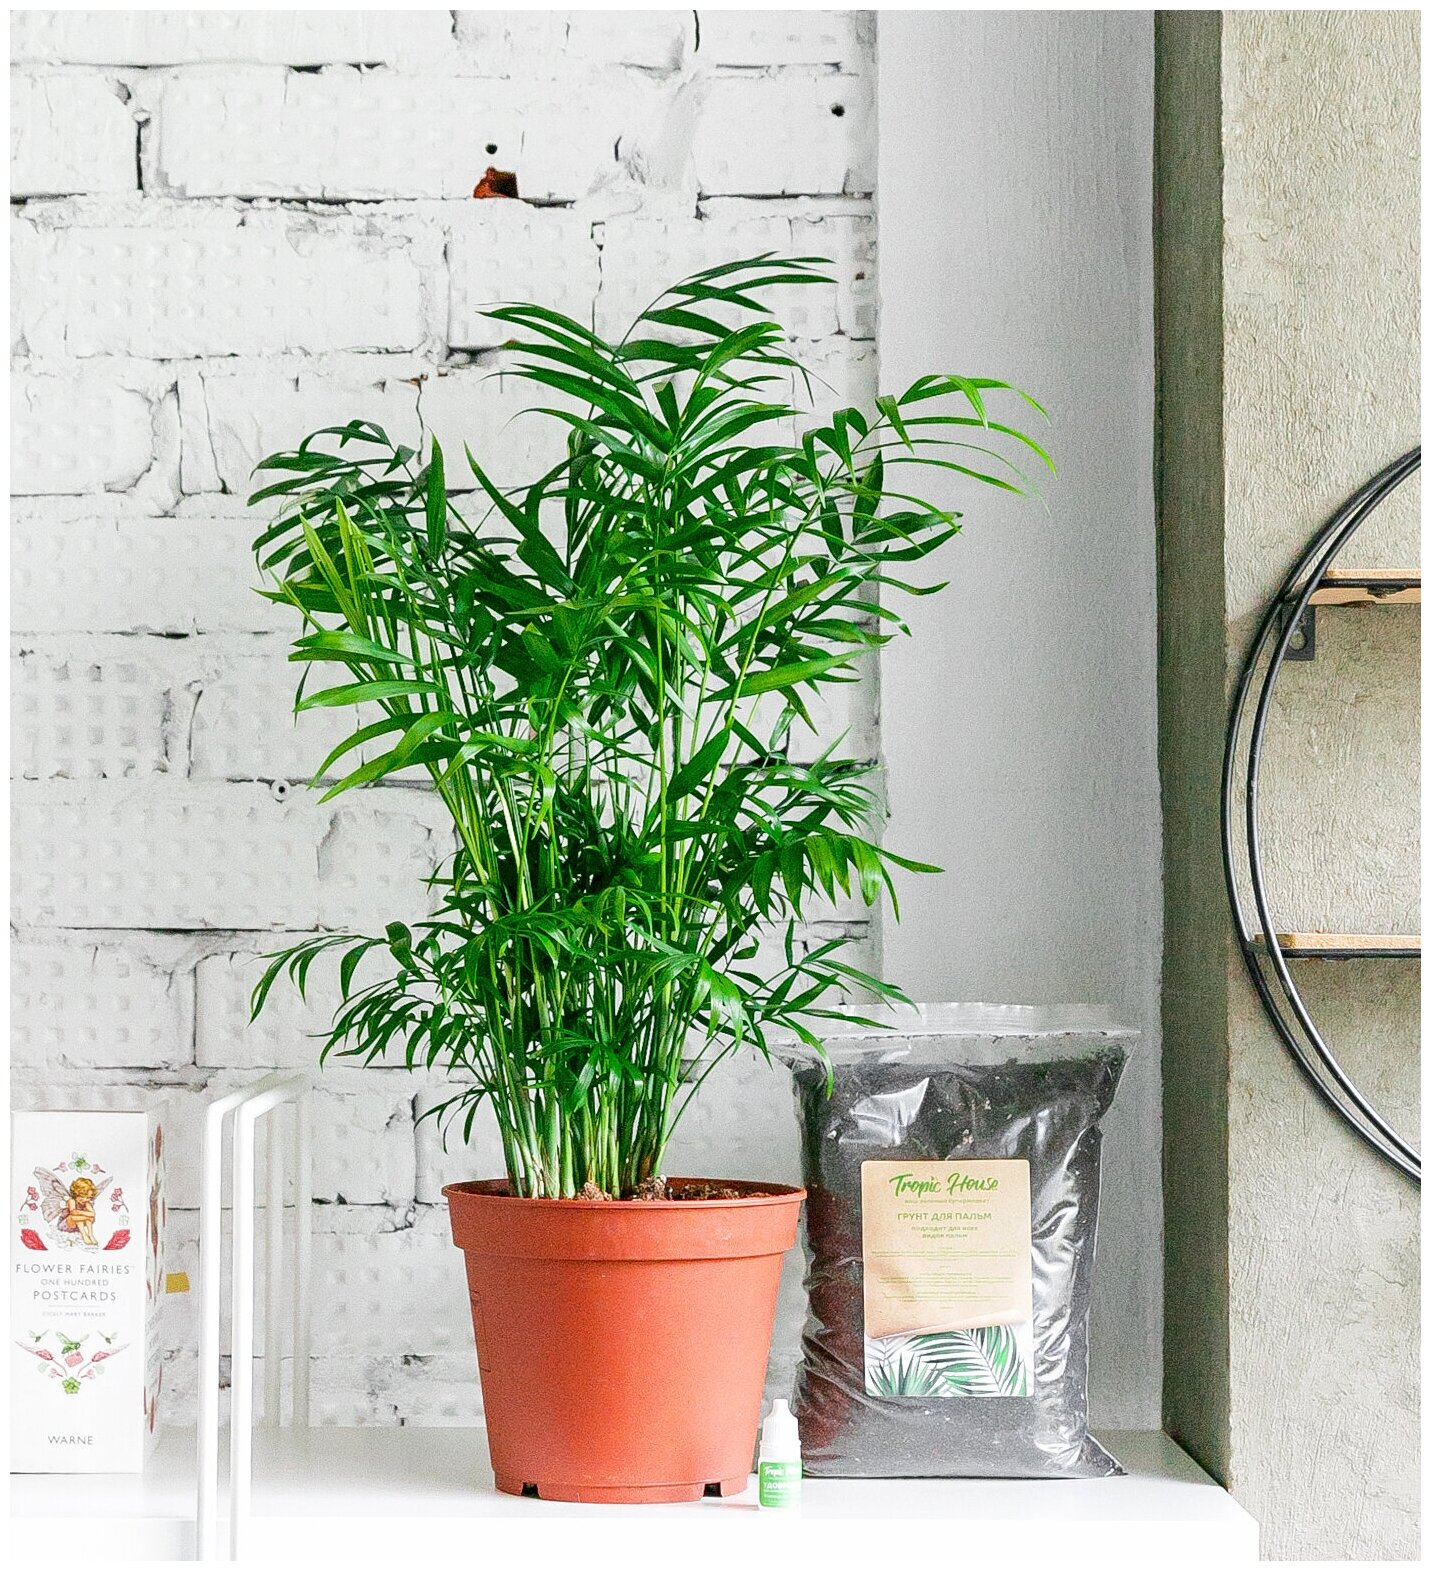 Комнатное растение Хамедорея Элеганс, высота 60 см. Грунт для пересадки в подарок